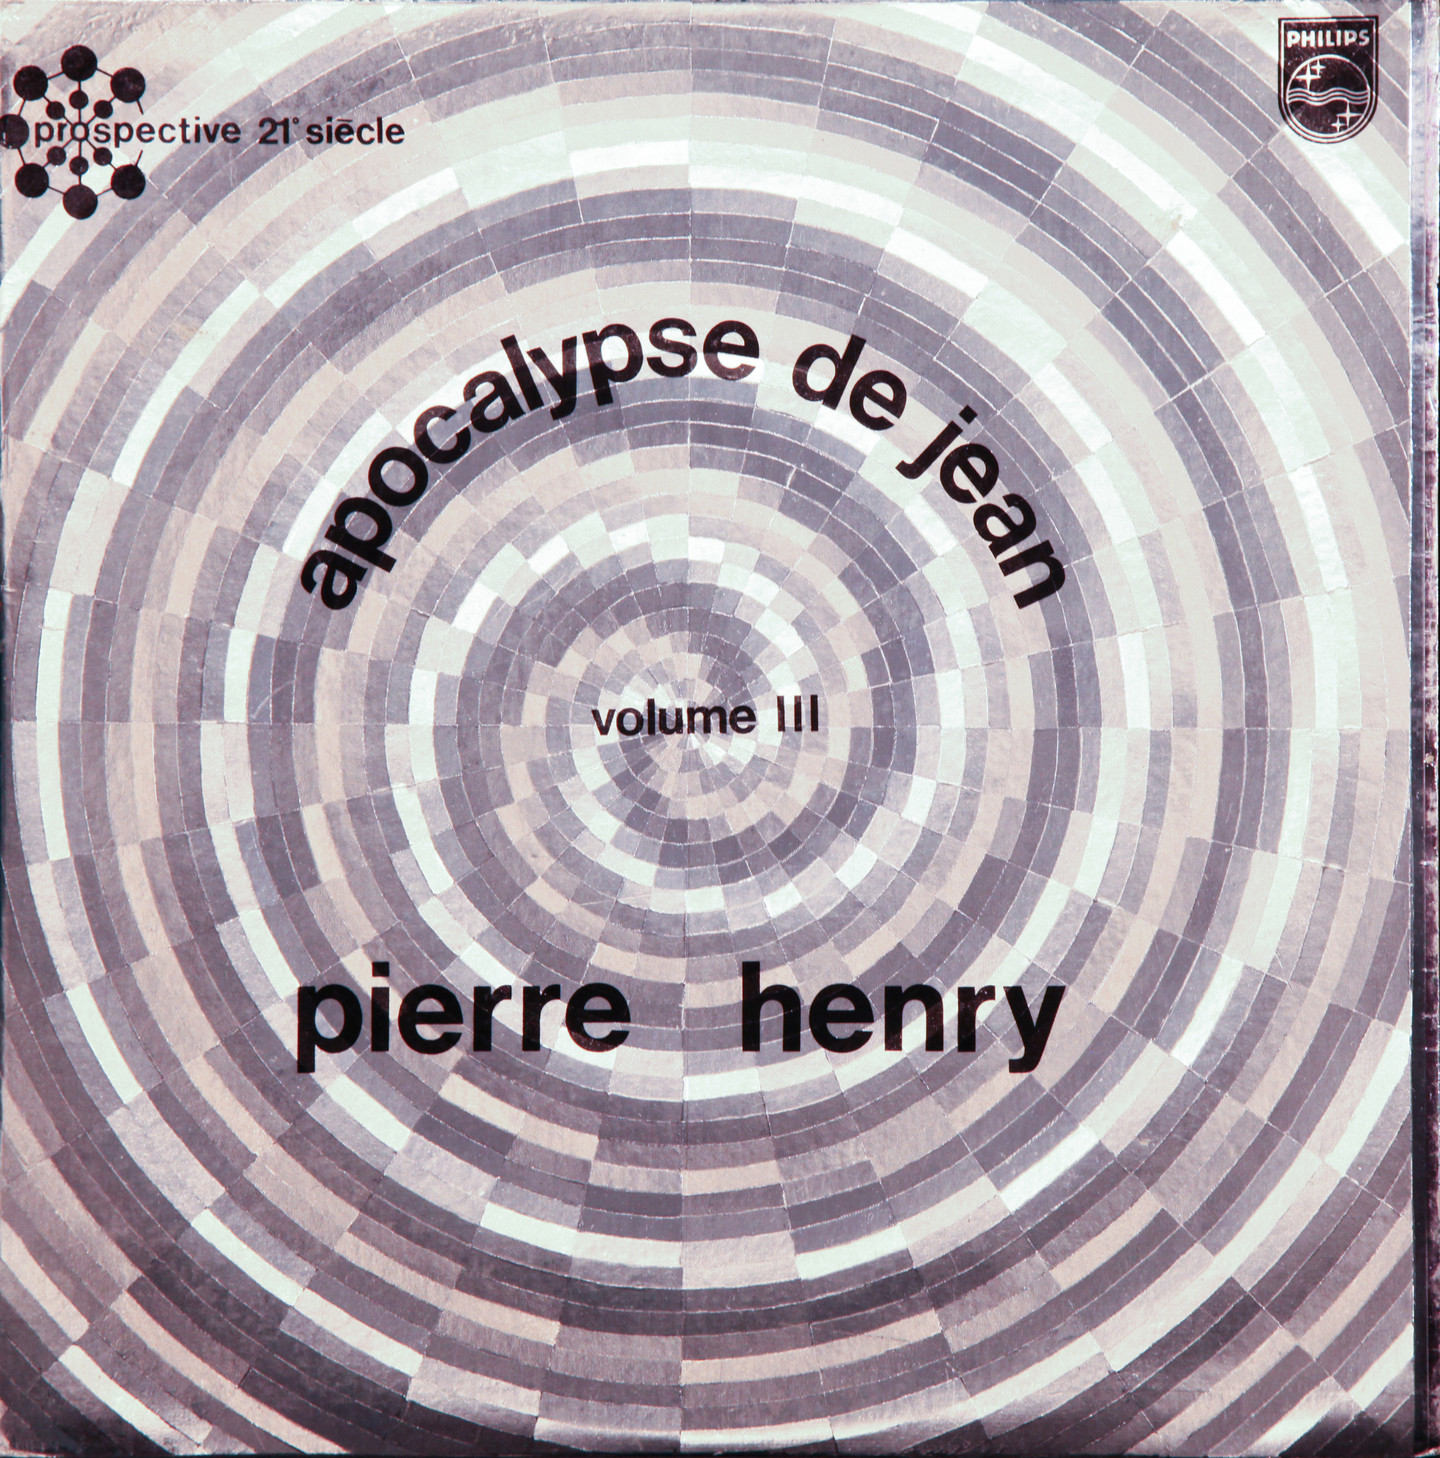 Apocalypse de Jean — Volume III — Pierre Henry — Philips 